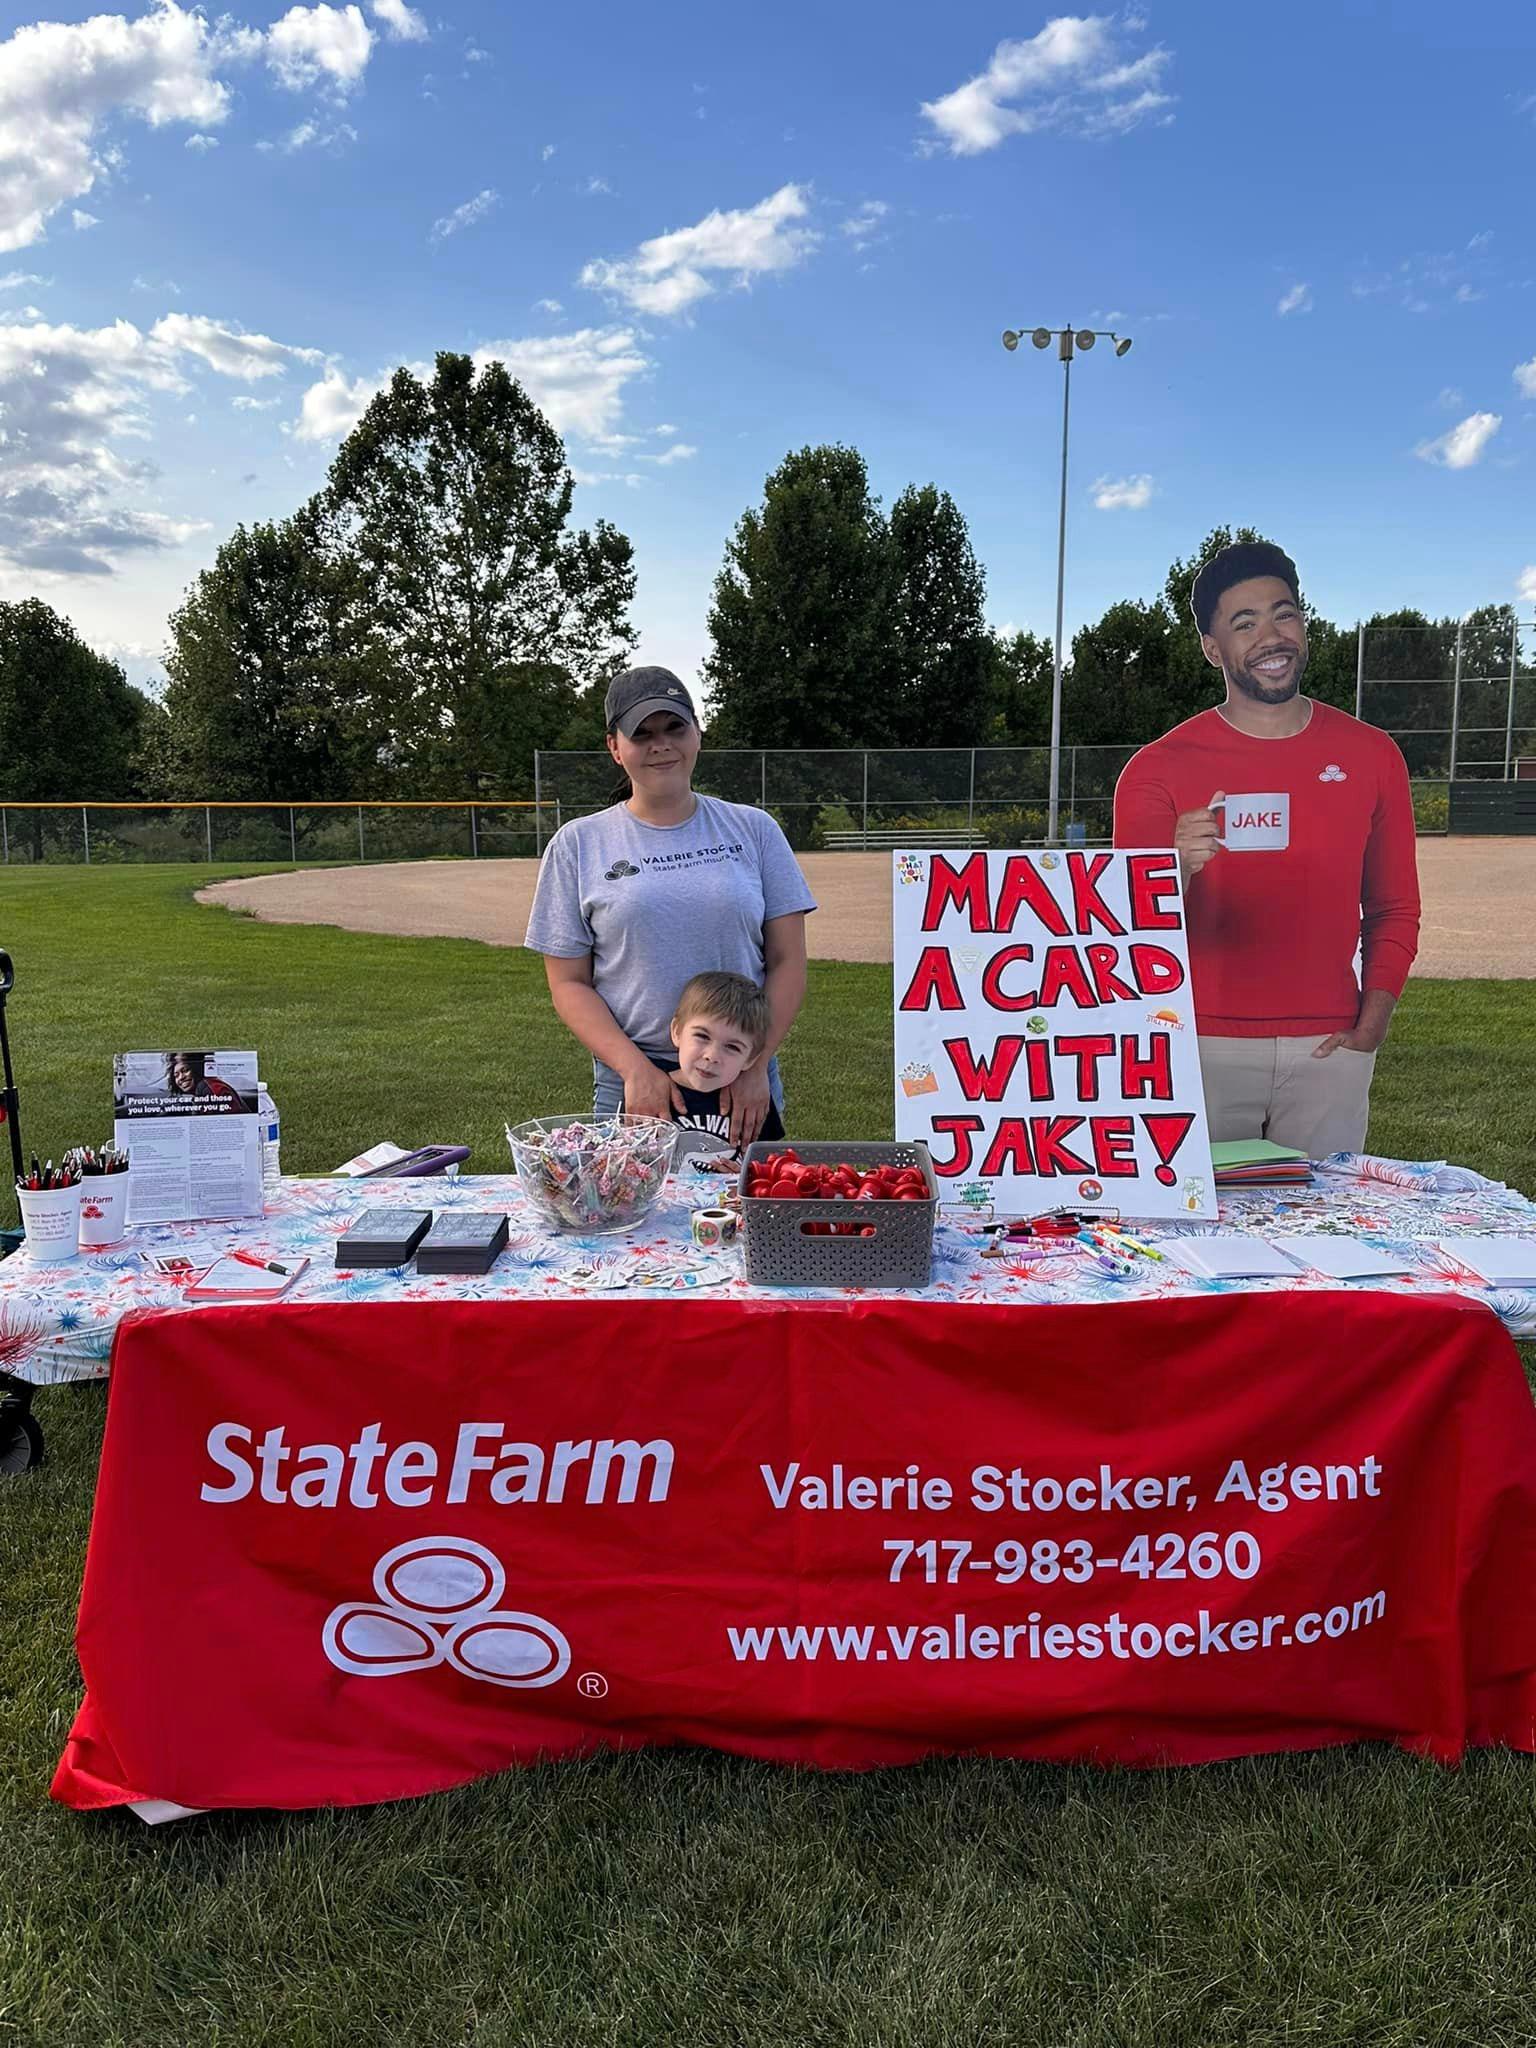 Valerie Stocker - State Farm Insurance Agent
Community event